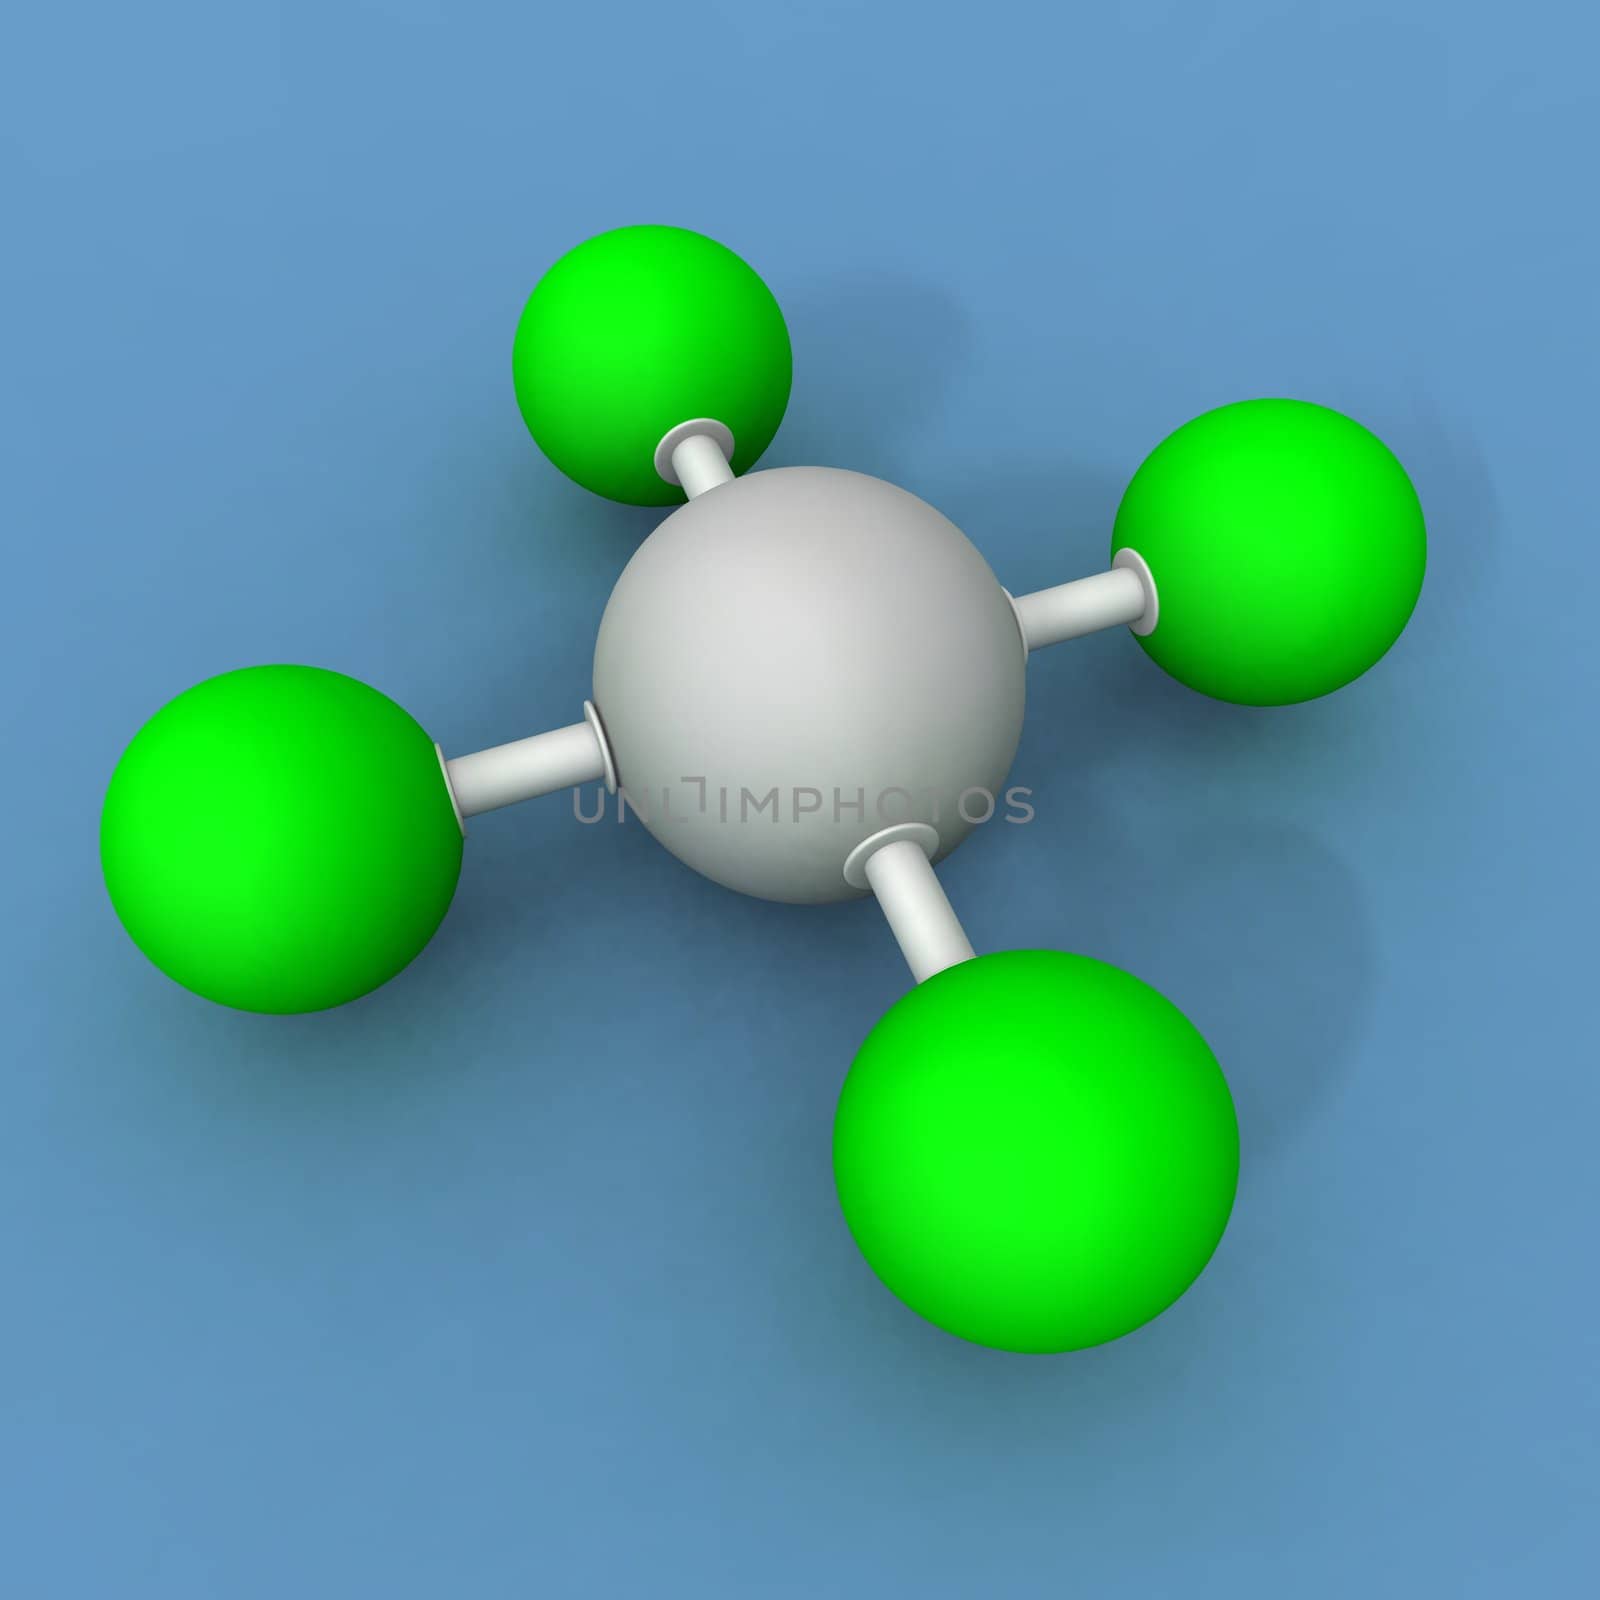 xenon fluoride molecule by jbouzou